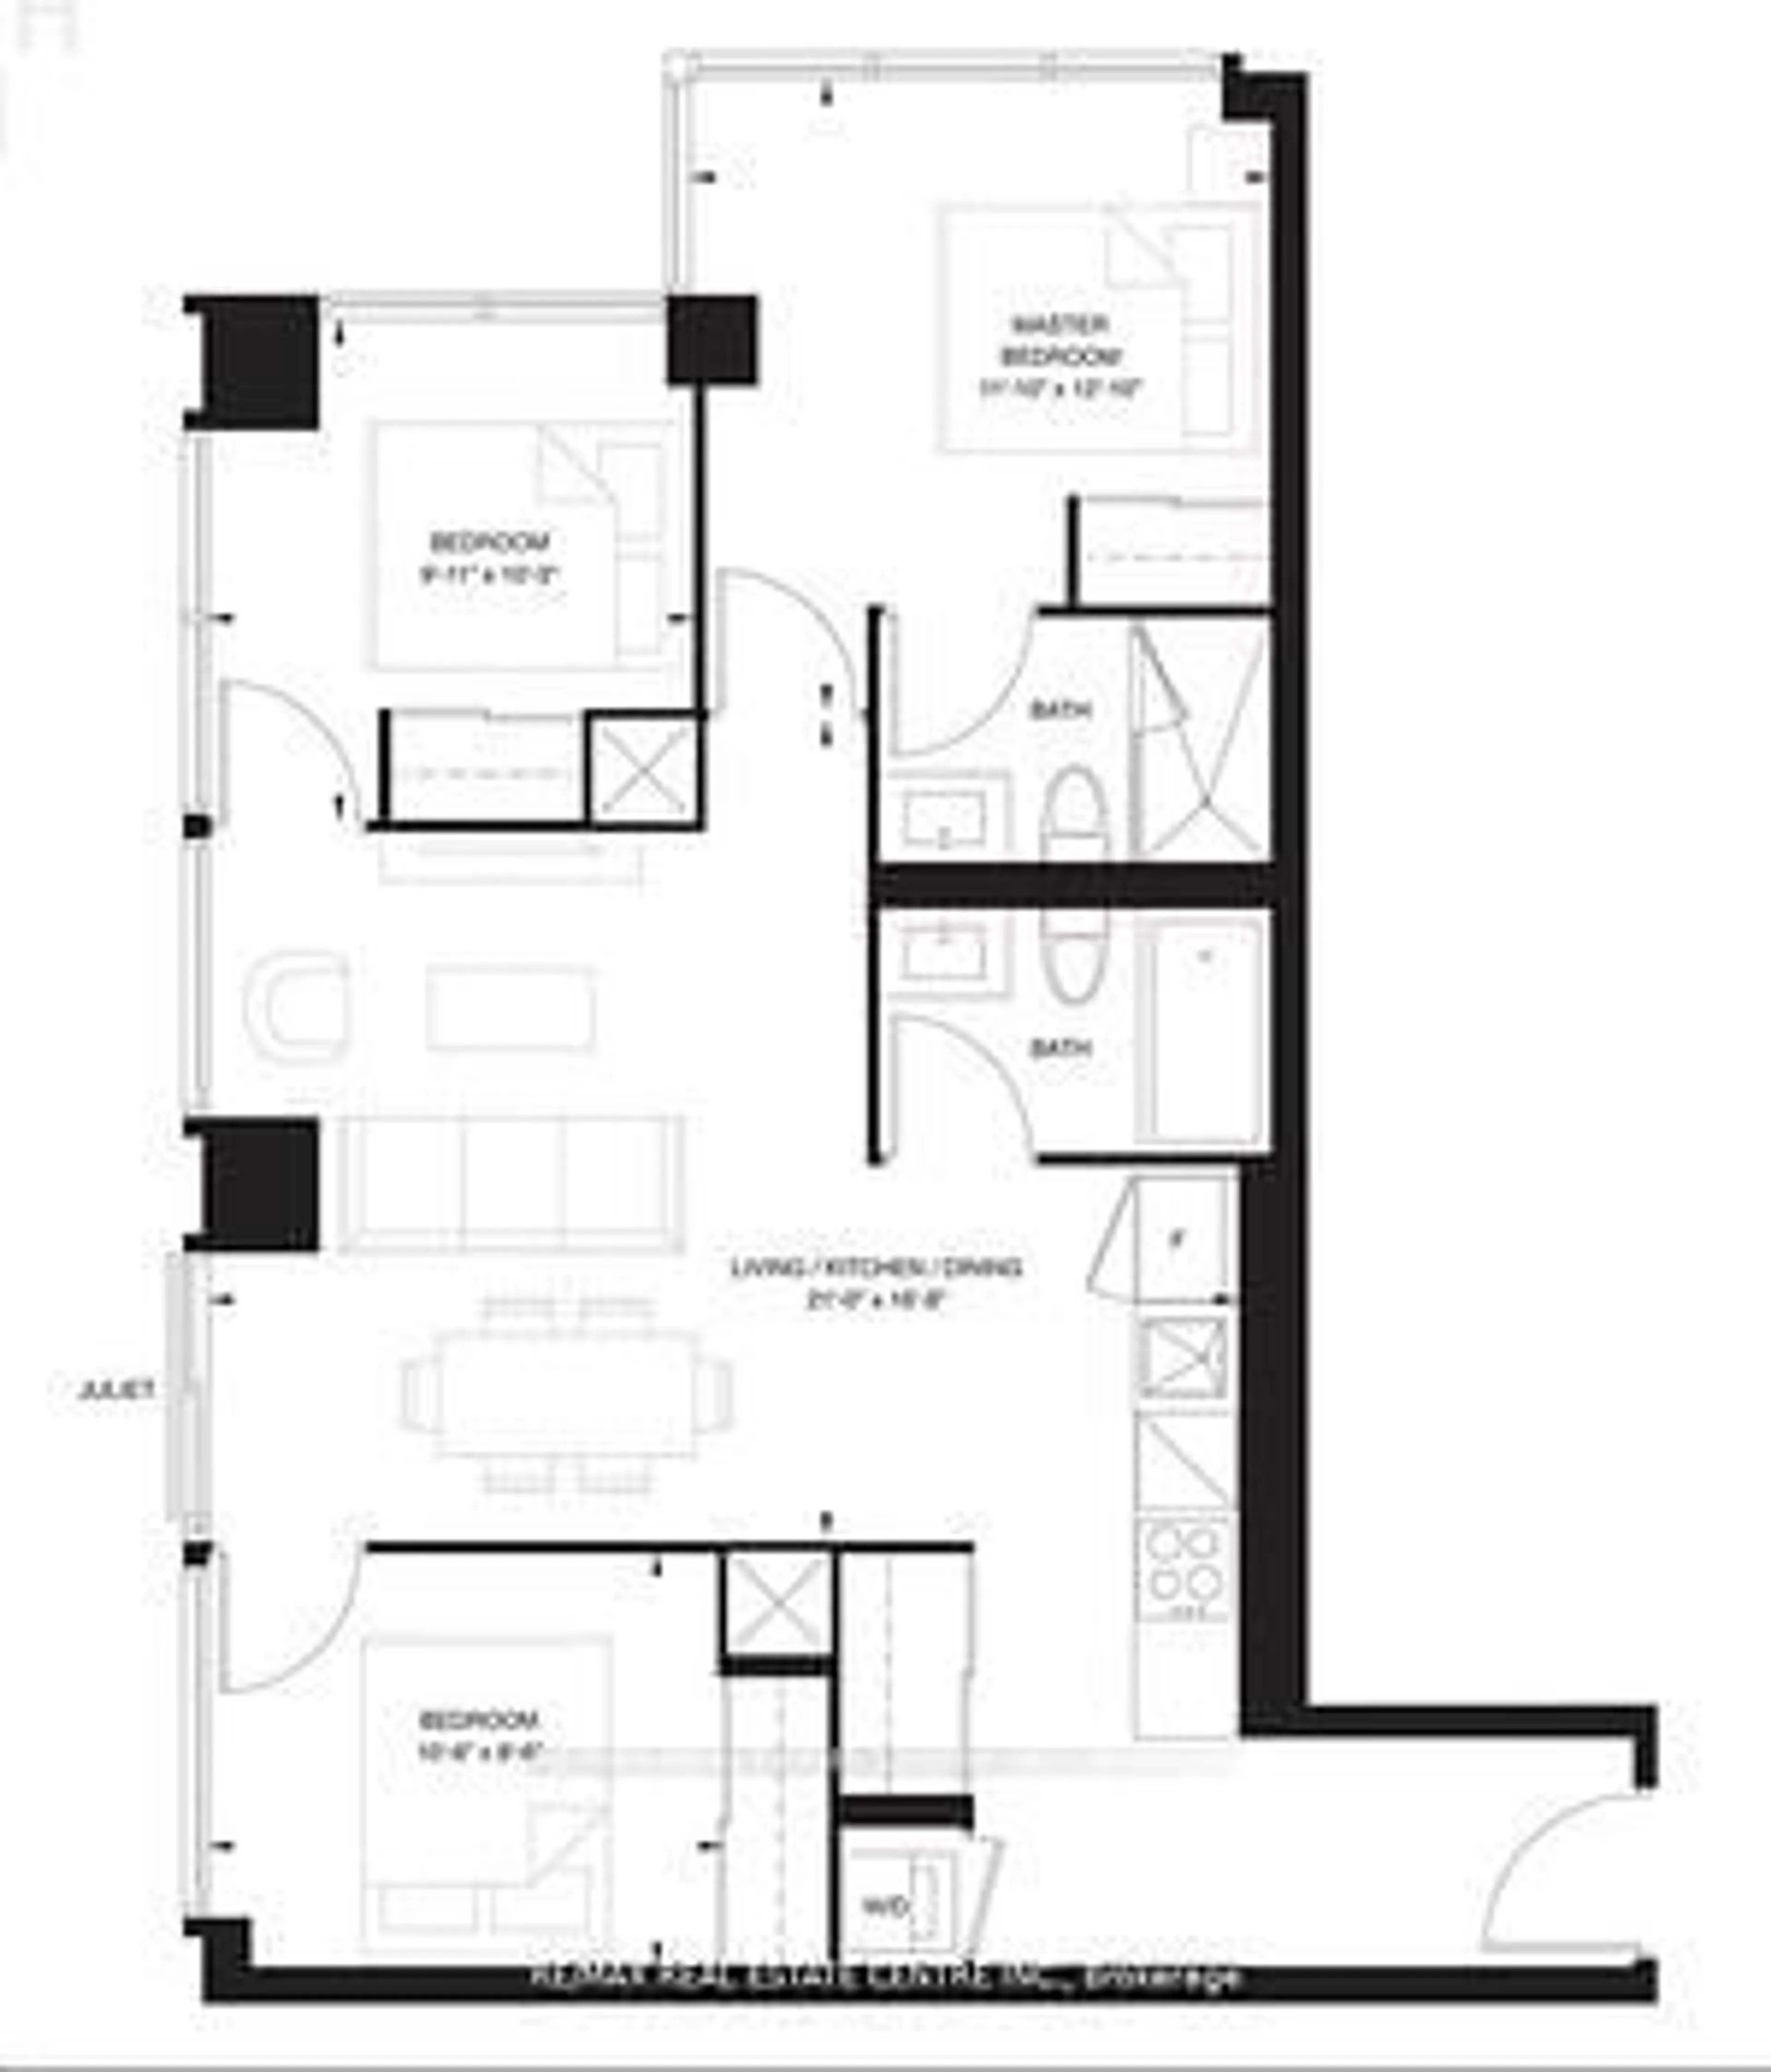 Floor plan for 2020 Bathurst St #211, Toronto Ontario M6C 2B9